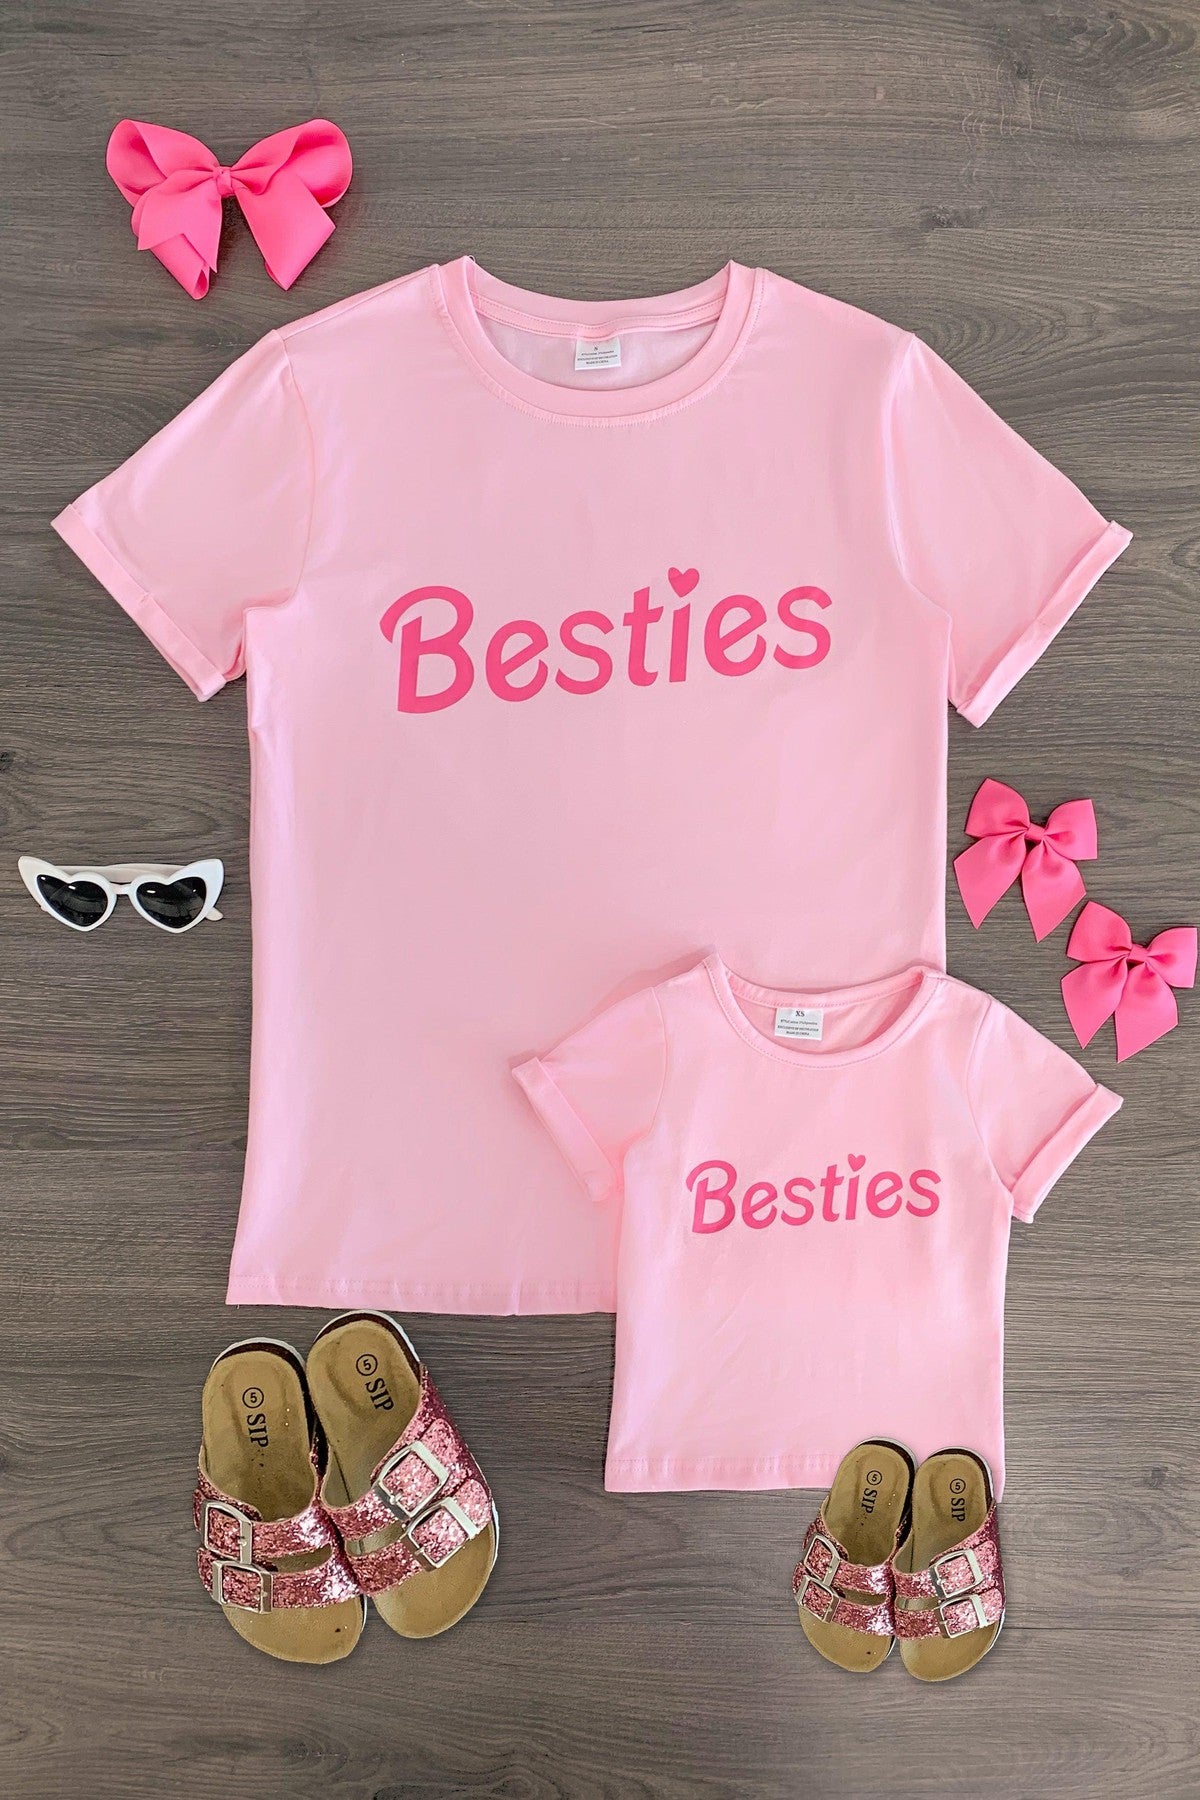 Mom & Me - "Besties" Pink Short Sleeve Top - Sparkle in Pink